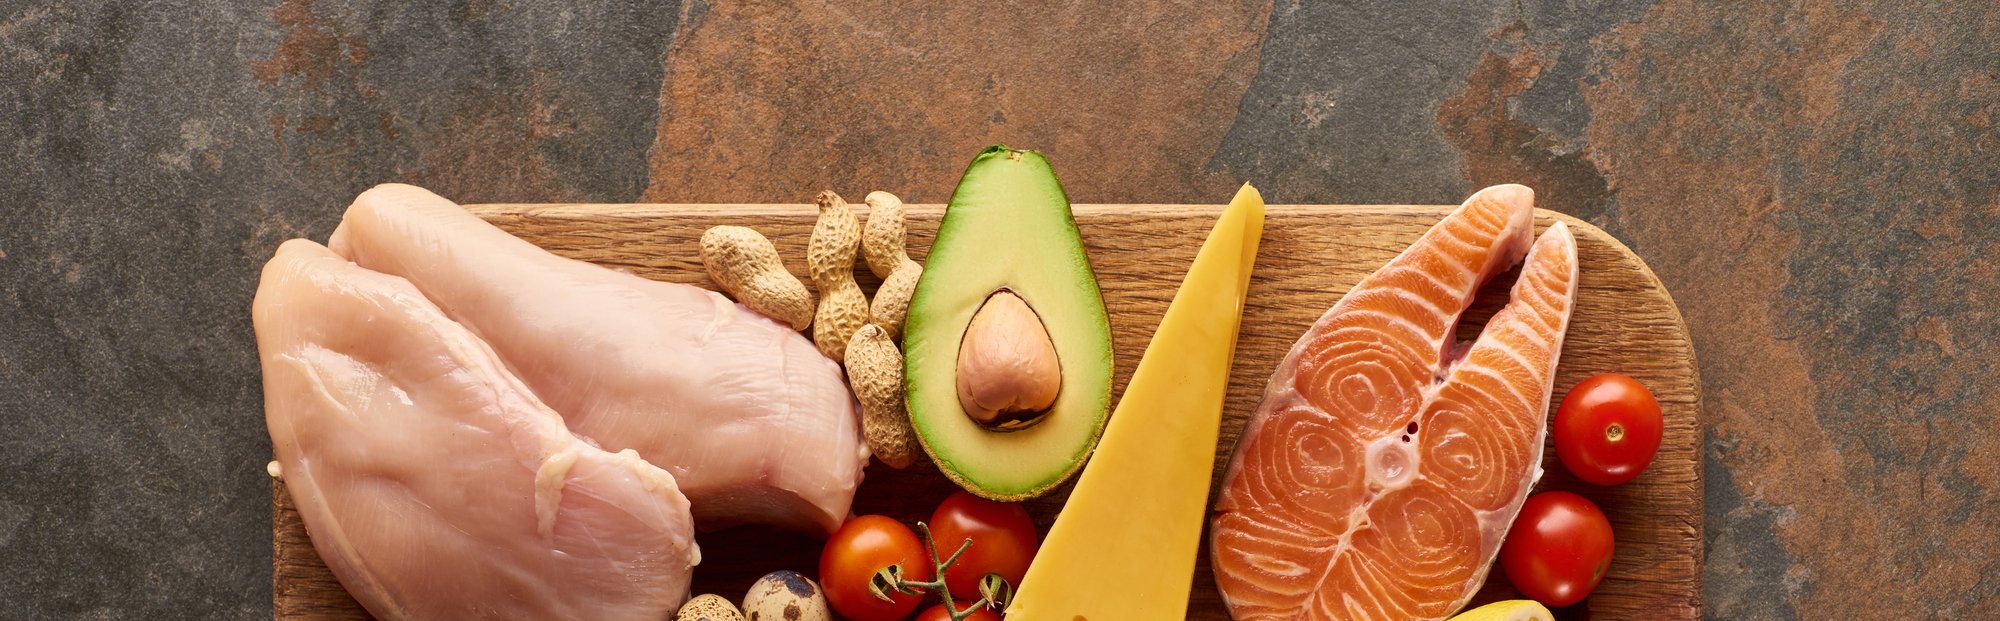 ¿Qué sabes de la dieta proteica?